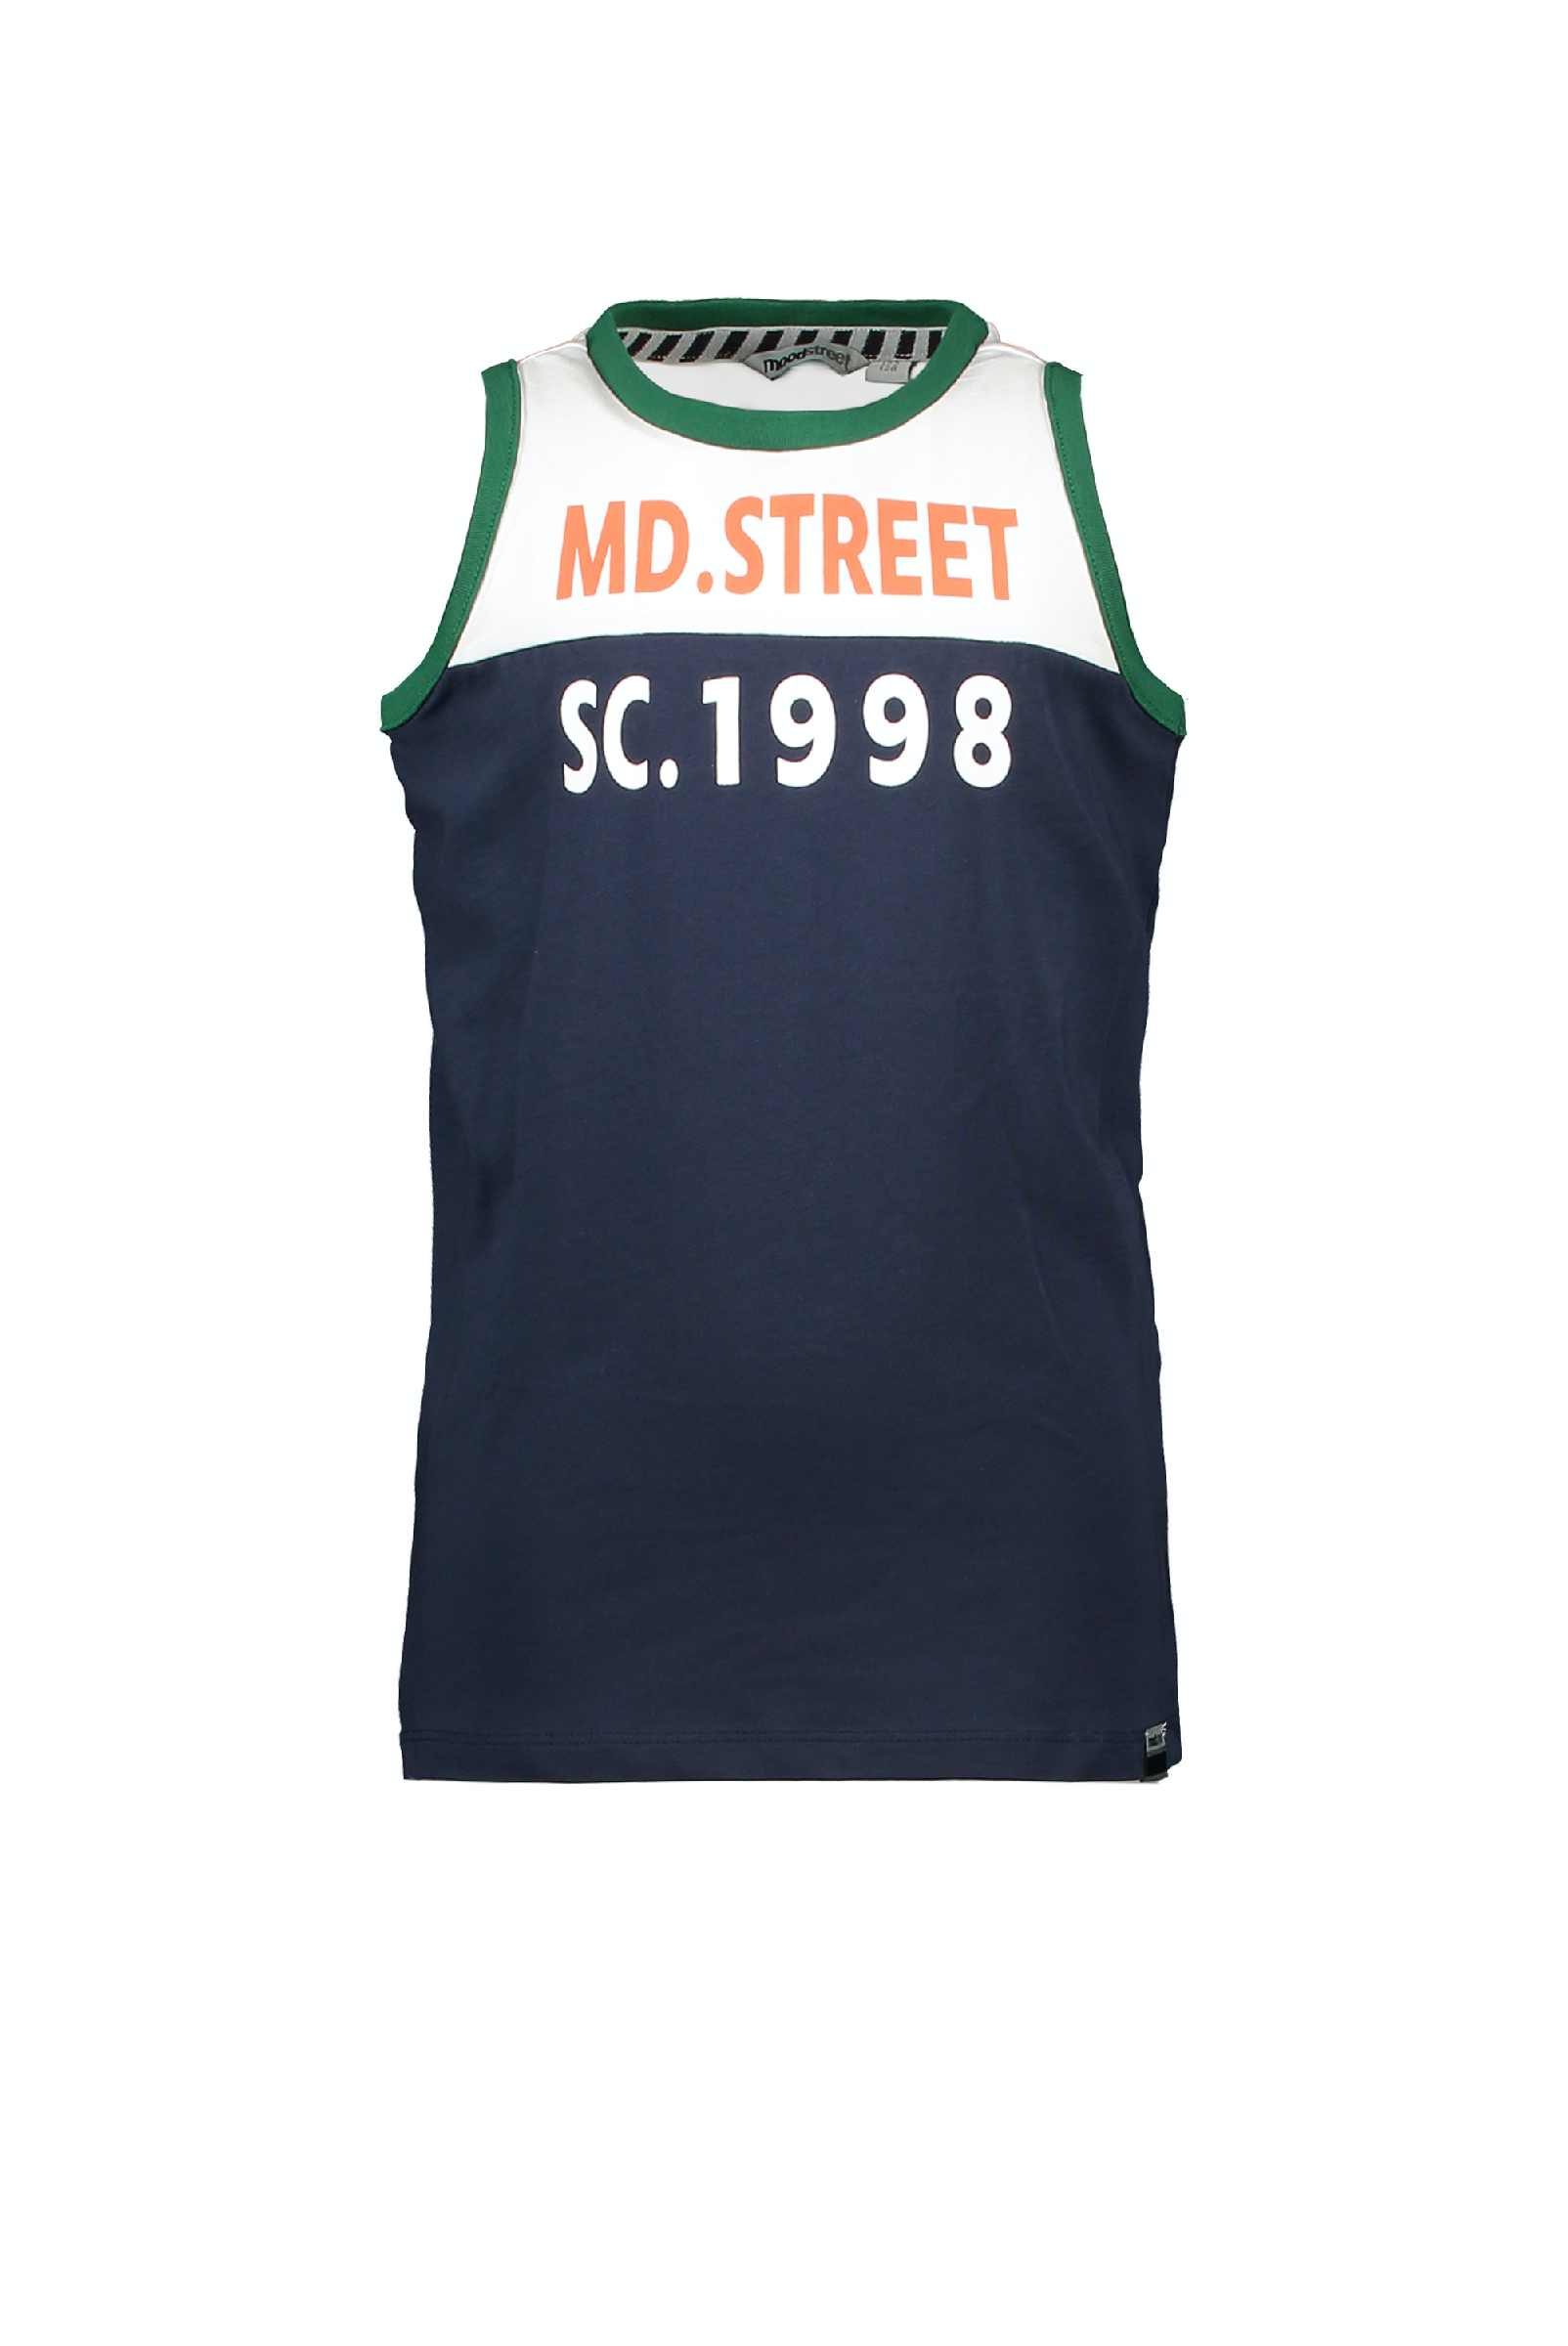 Jongens MT t-shirt sleeveless van Moodstreet in de kleur Navy in maat 98, 104.